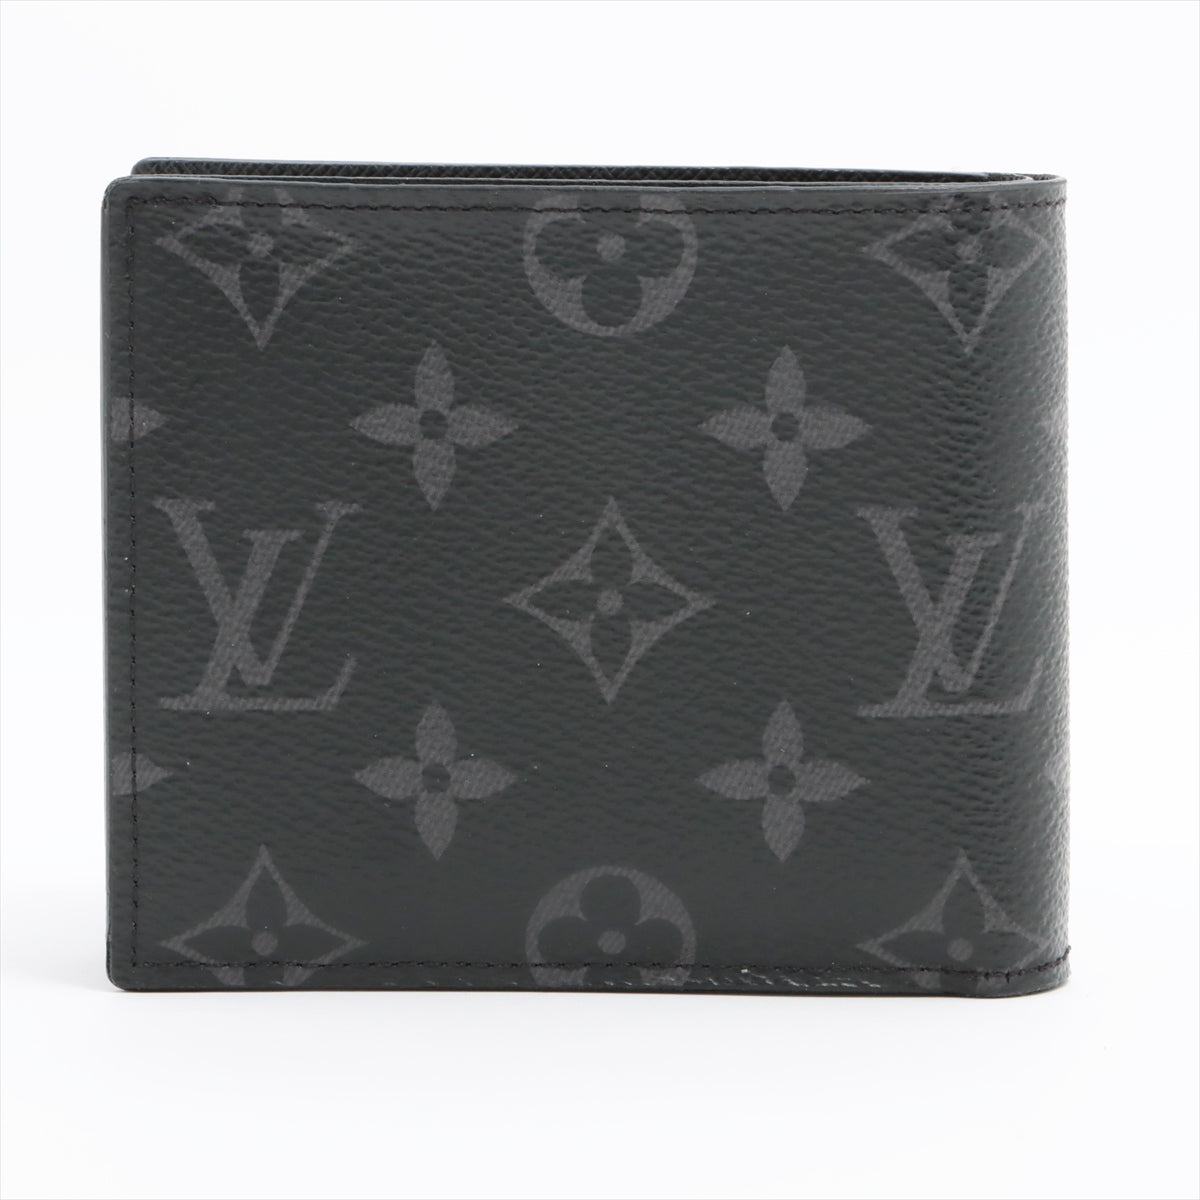 Louis Vuitton Monogram Eclipse Portefeuille Marco NM M62545 Black Compact Wallet